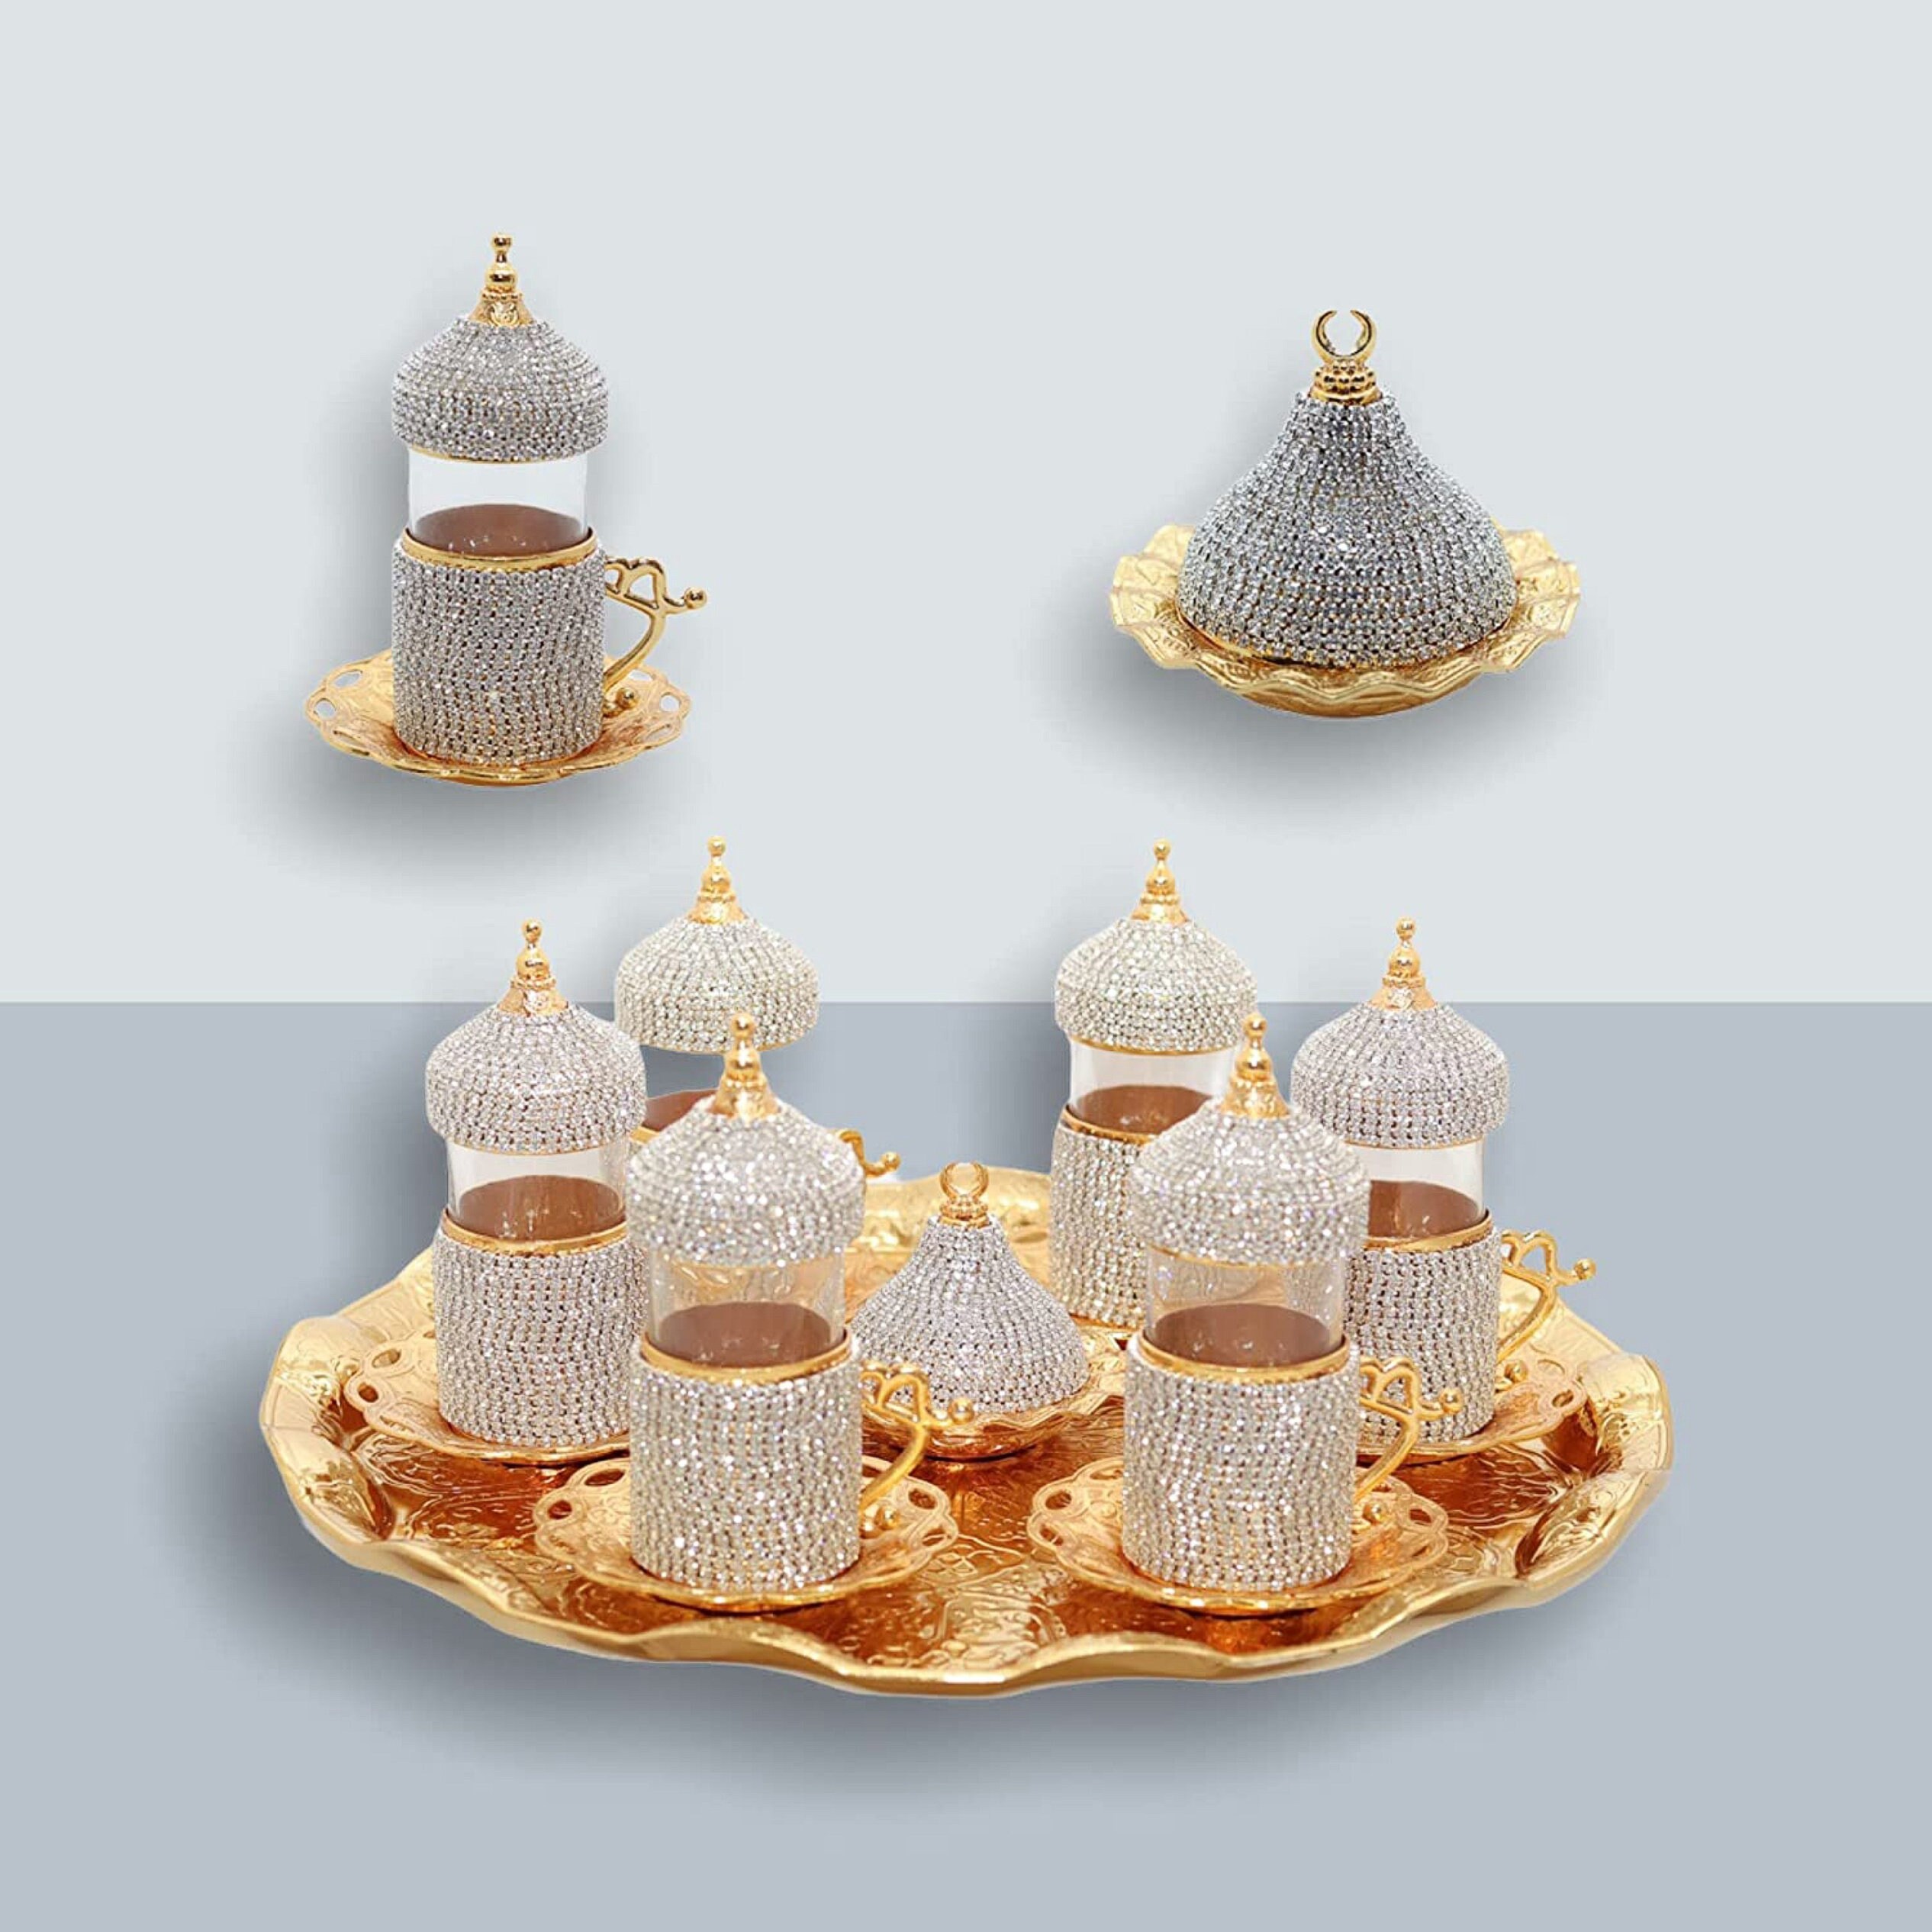 Sefa Turkish Tea Glass Set of 6, Turkish Tea Glasses with Holders